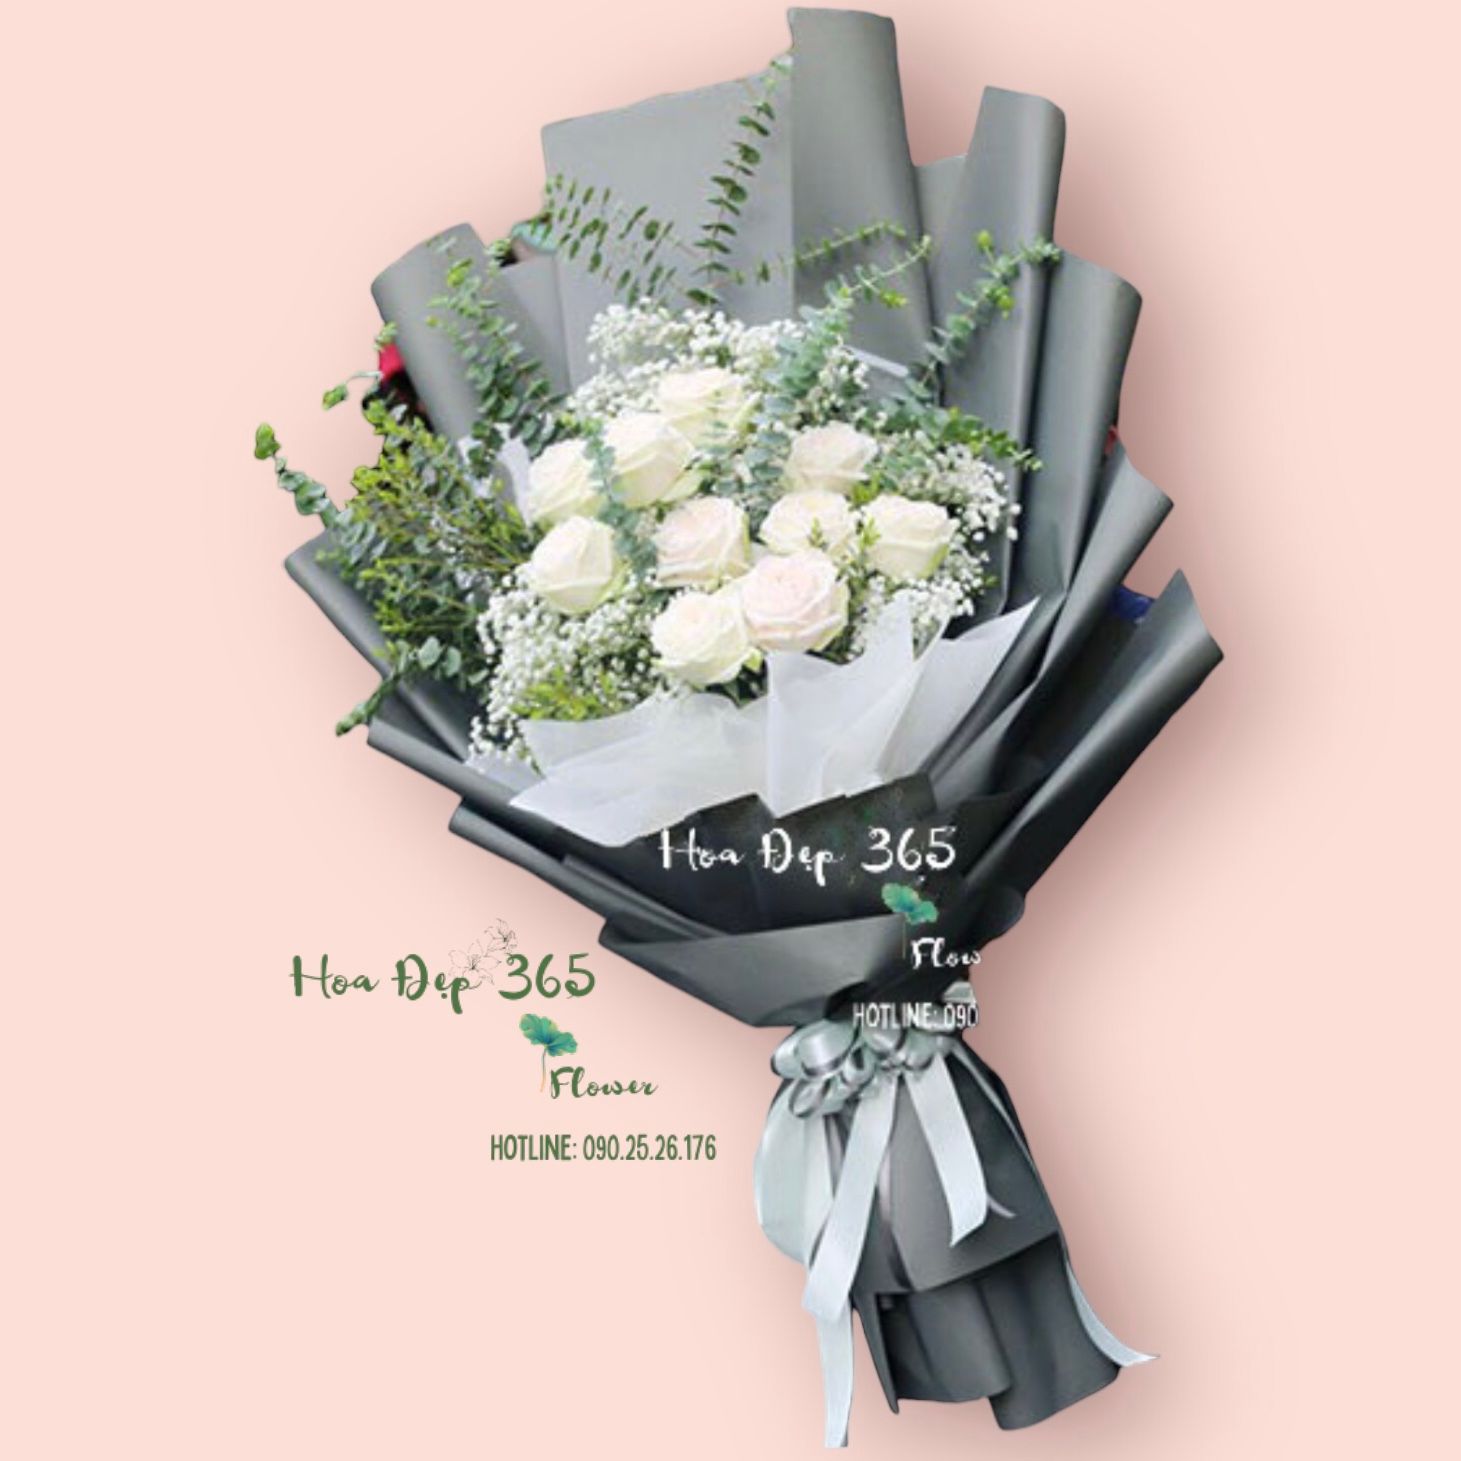  White Roses - HBD09 - Hoa 8/3 